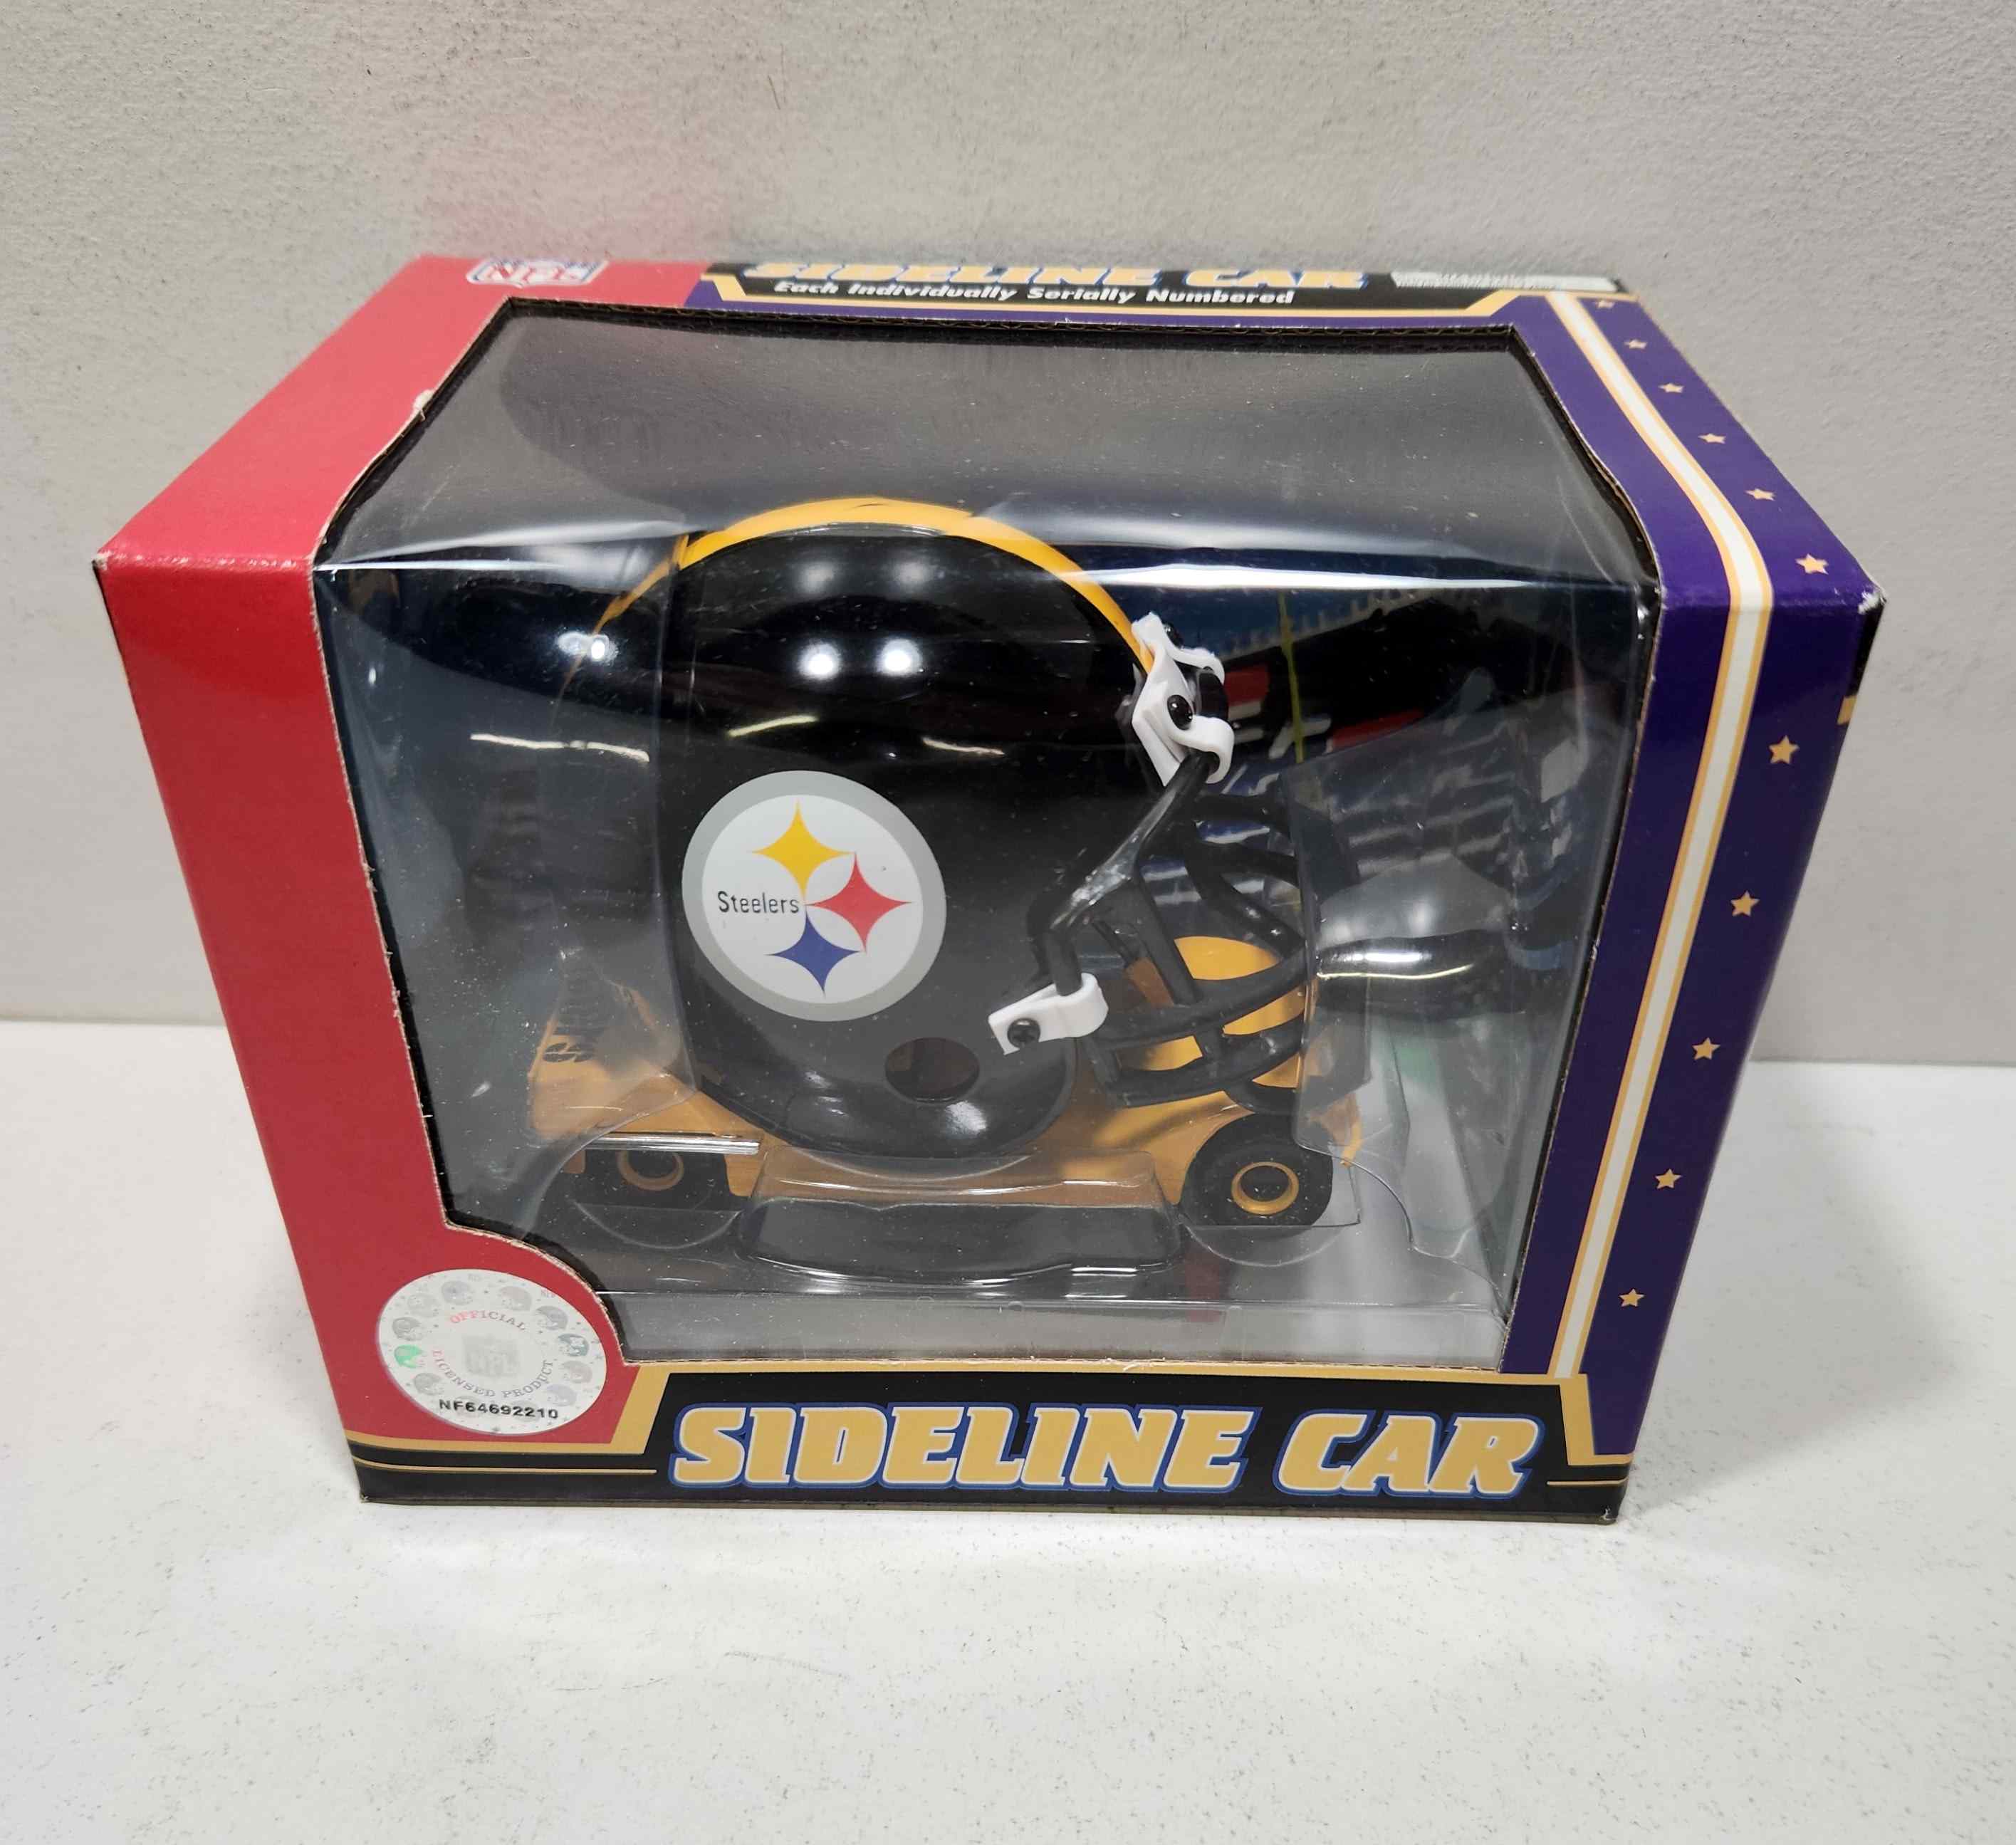 2006 Pittsburgh Steelers Sideline Car